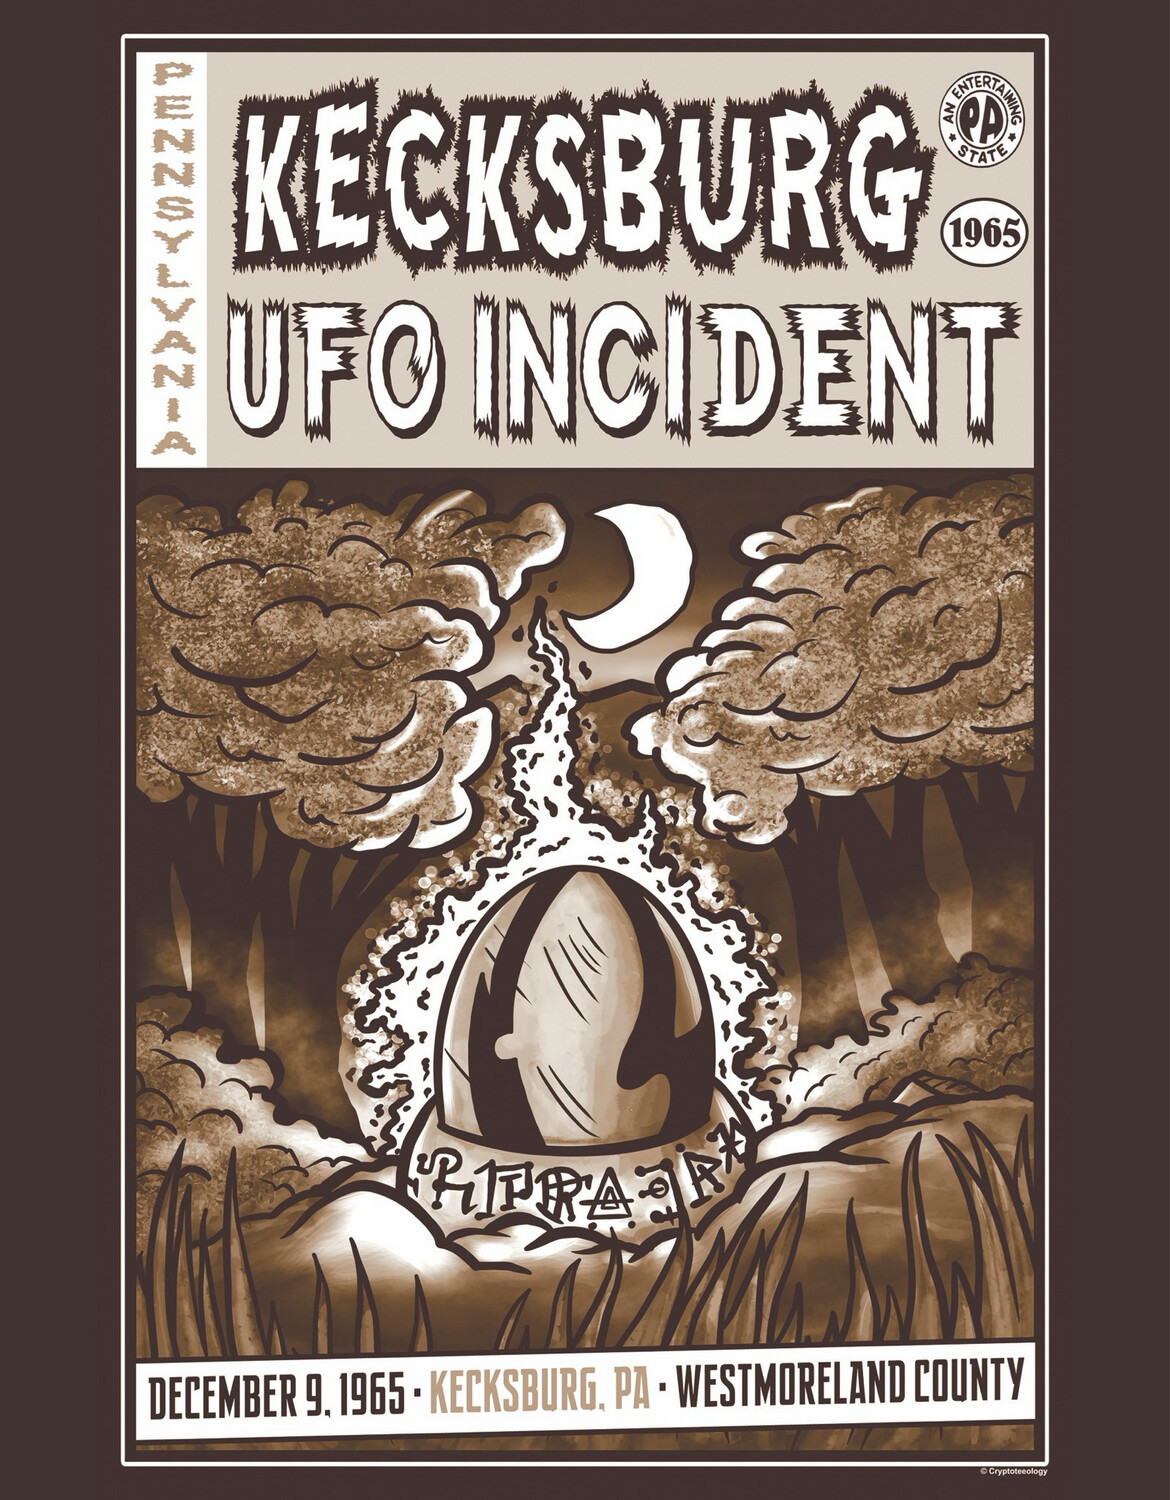 Kecksburg UFO Incident (Vintage)